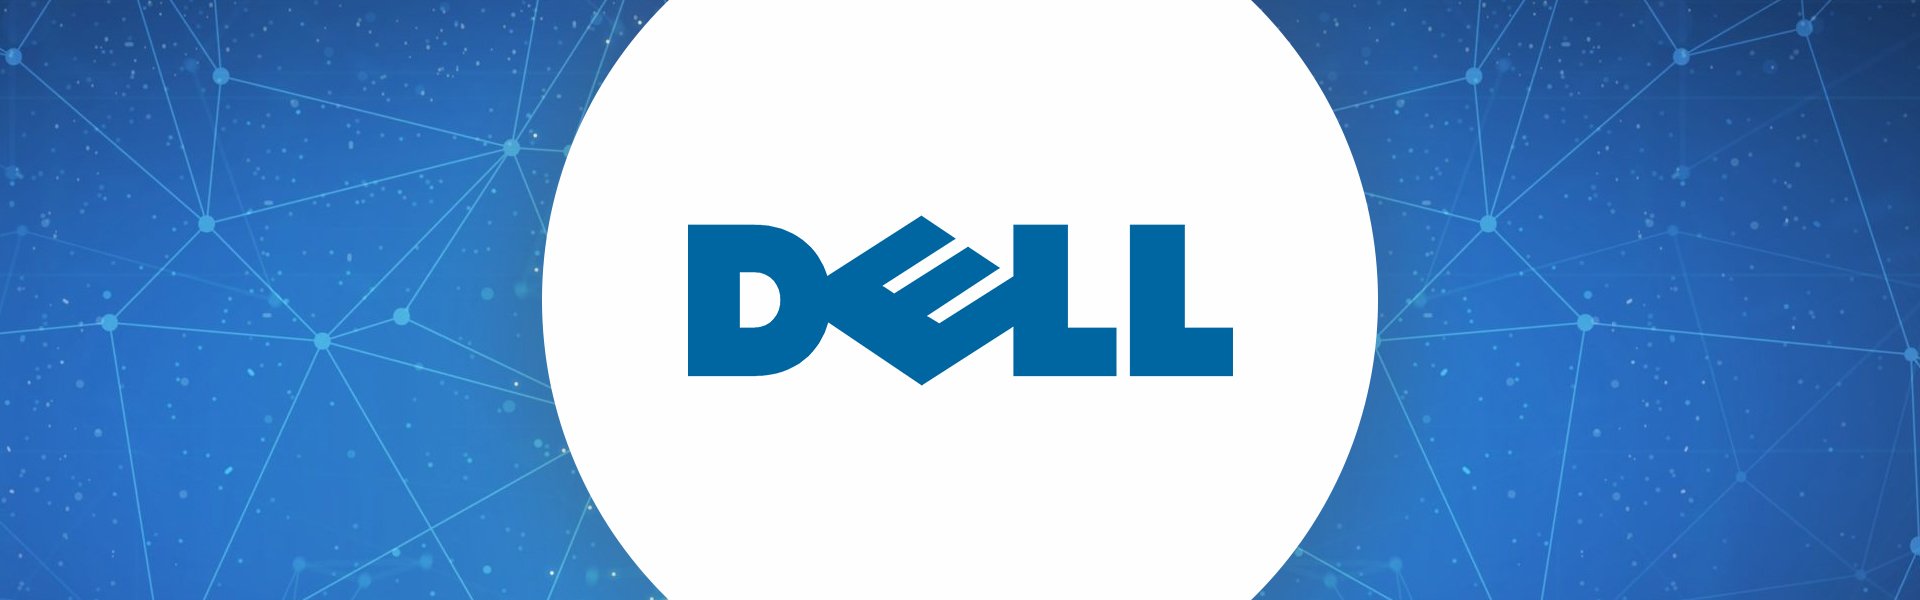 14" Dell e5480 i5-6300 8GB 480GB SSD FHD Windows 10 Professional Dell